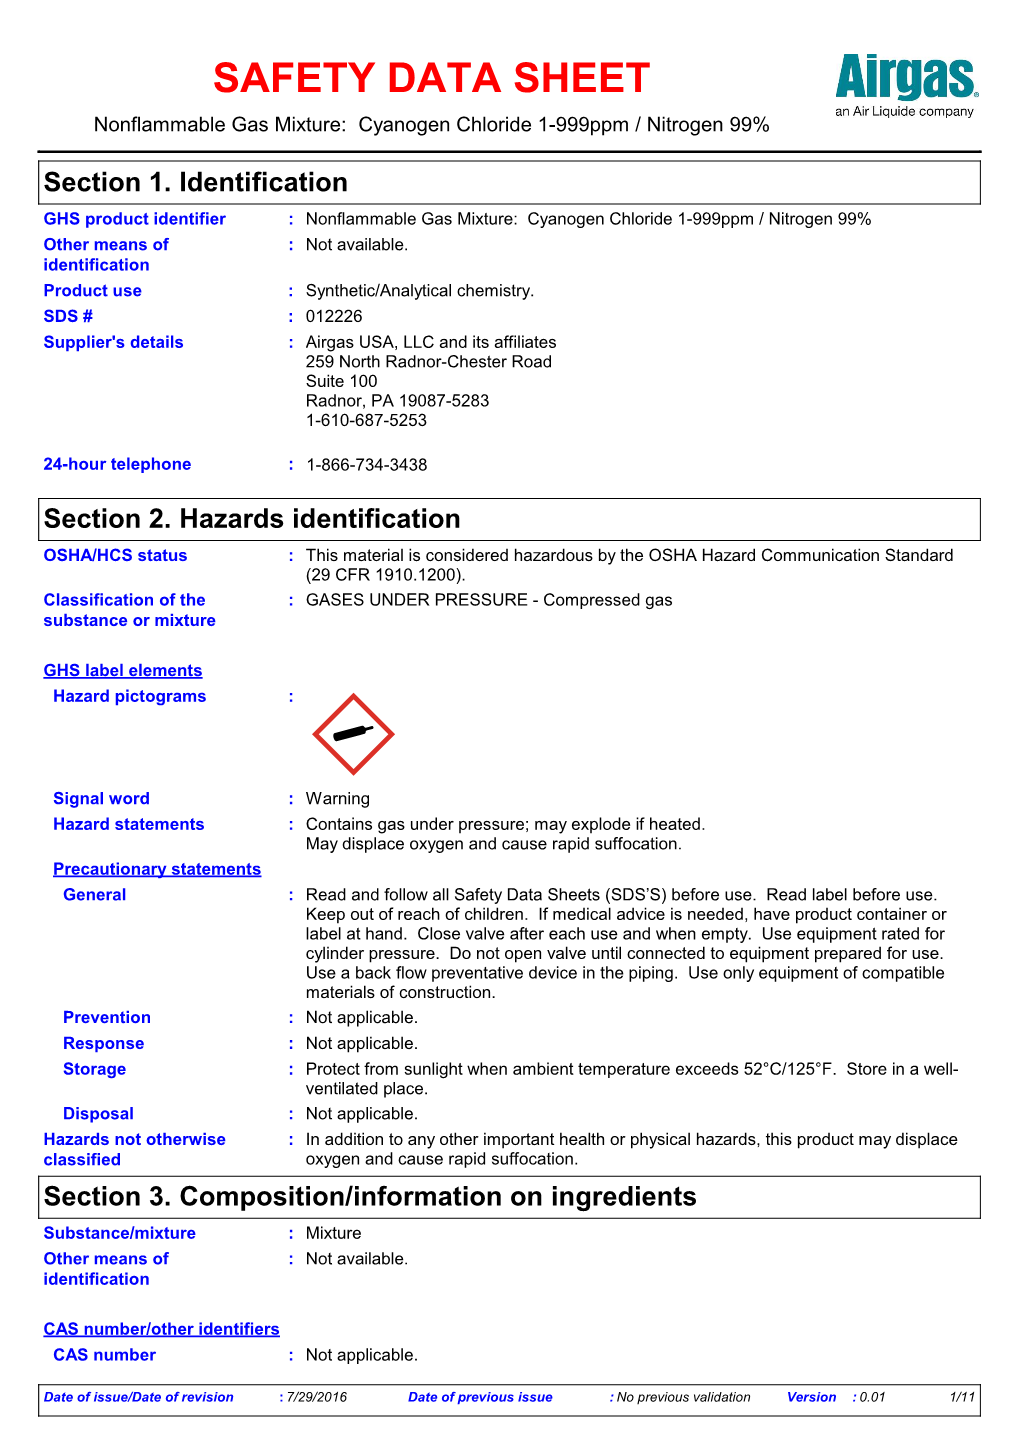 SAFETY DATA SHEET Nonflammable Gas Mixture: Cyanogen Chloride 1-999Ppm / Nitrogen 99%